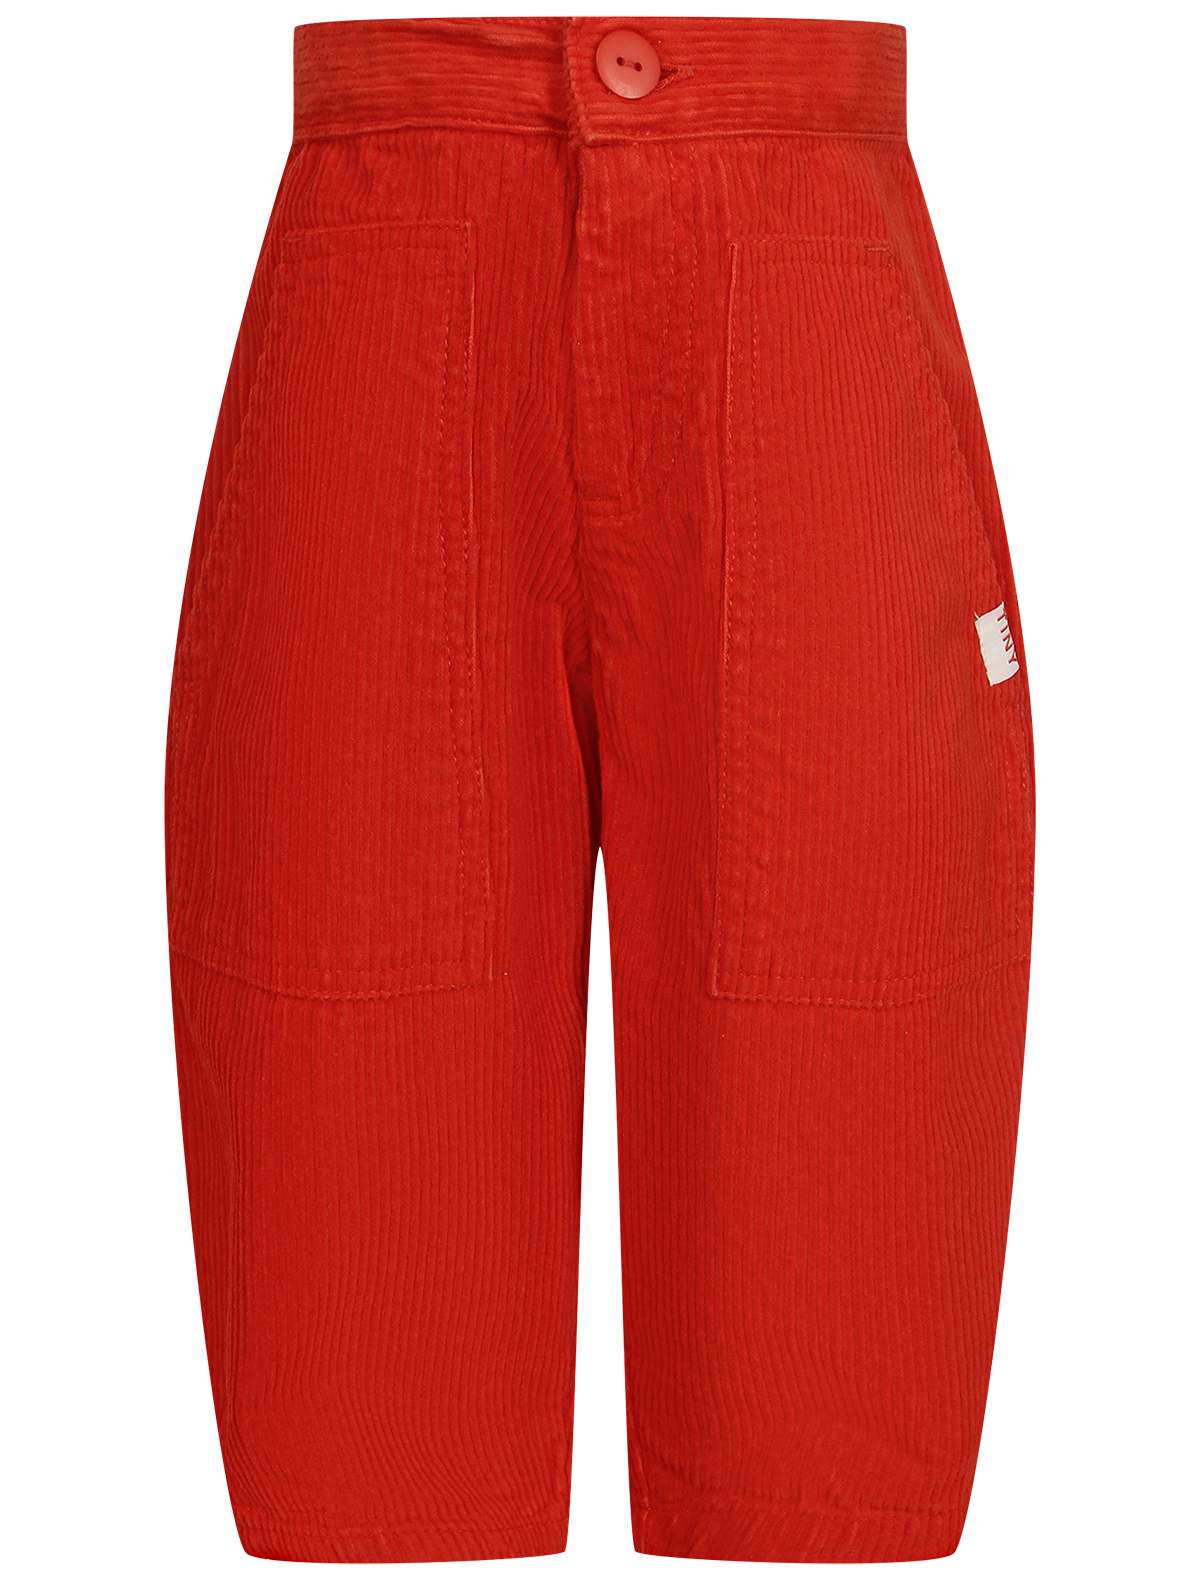 брюки tinycottons для девочки, красные